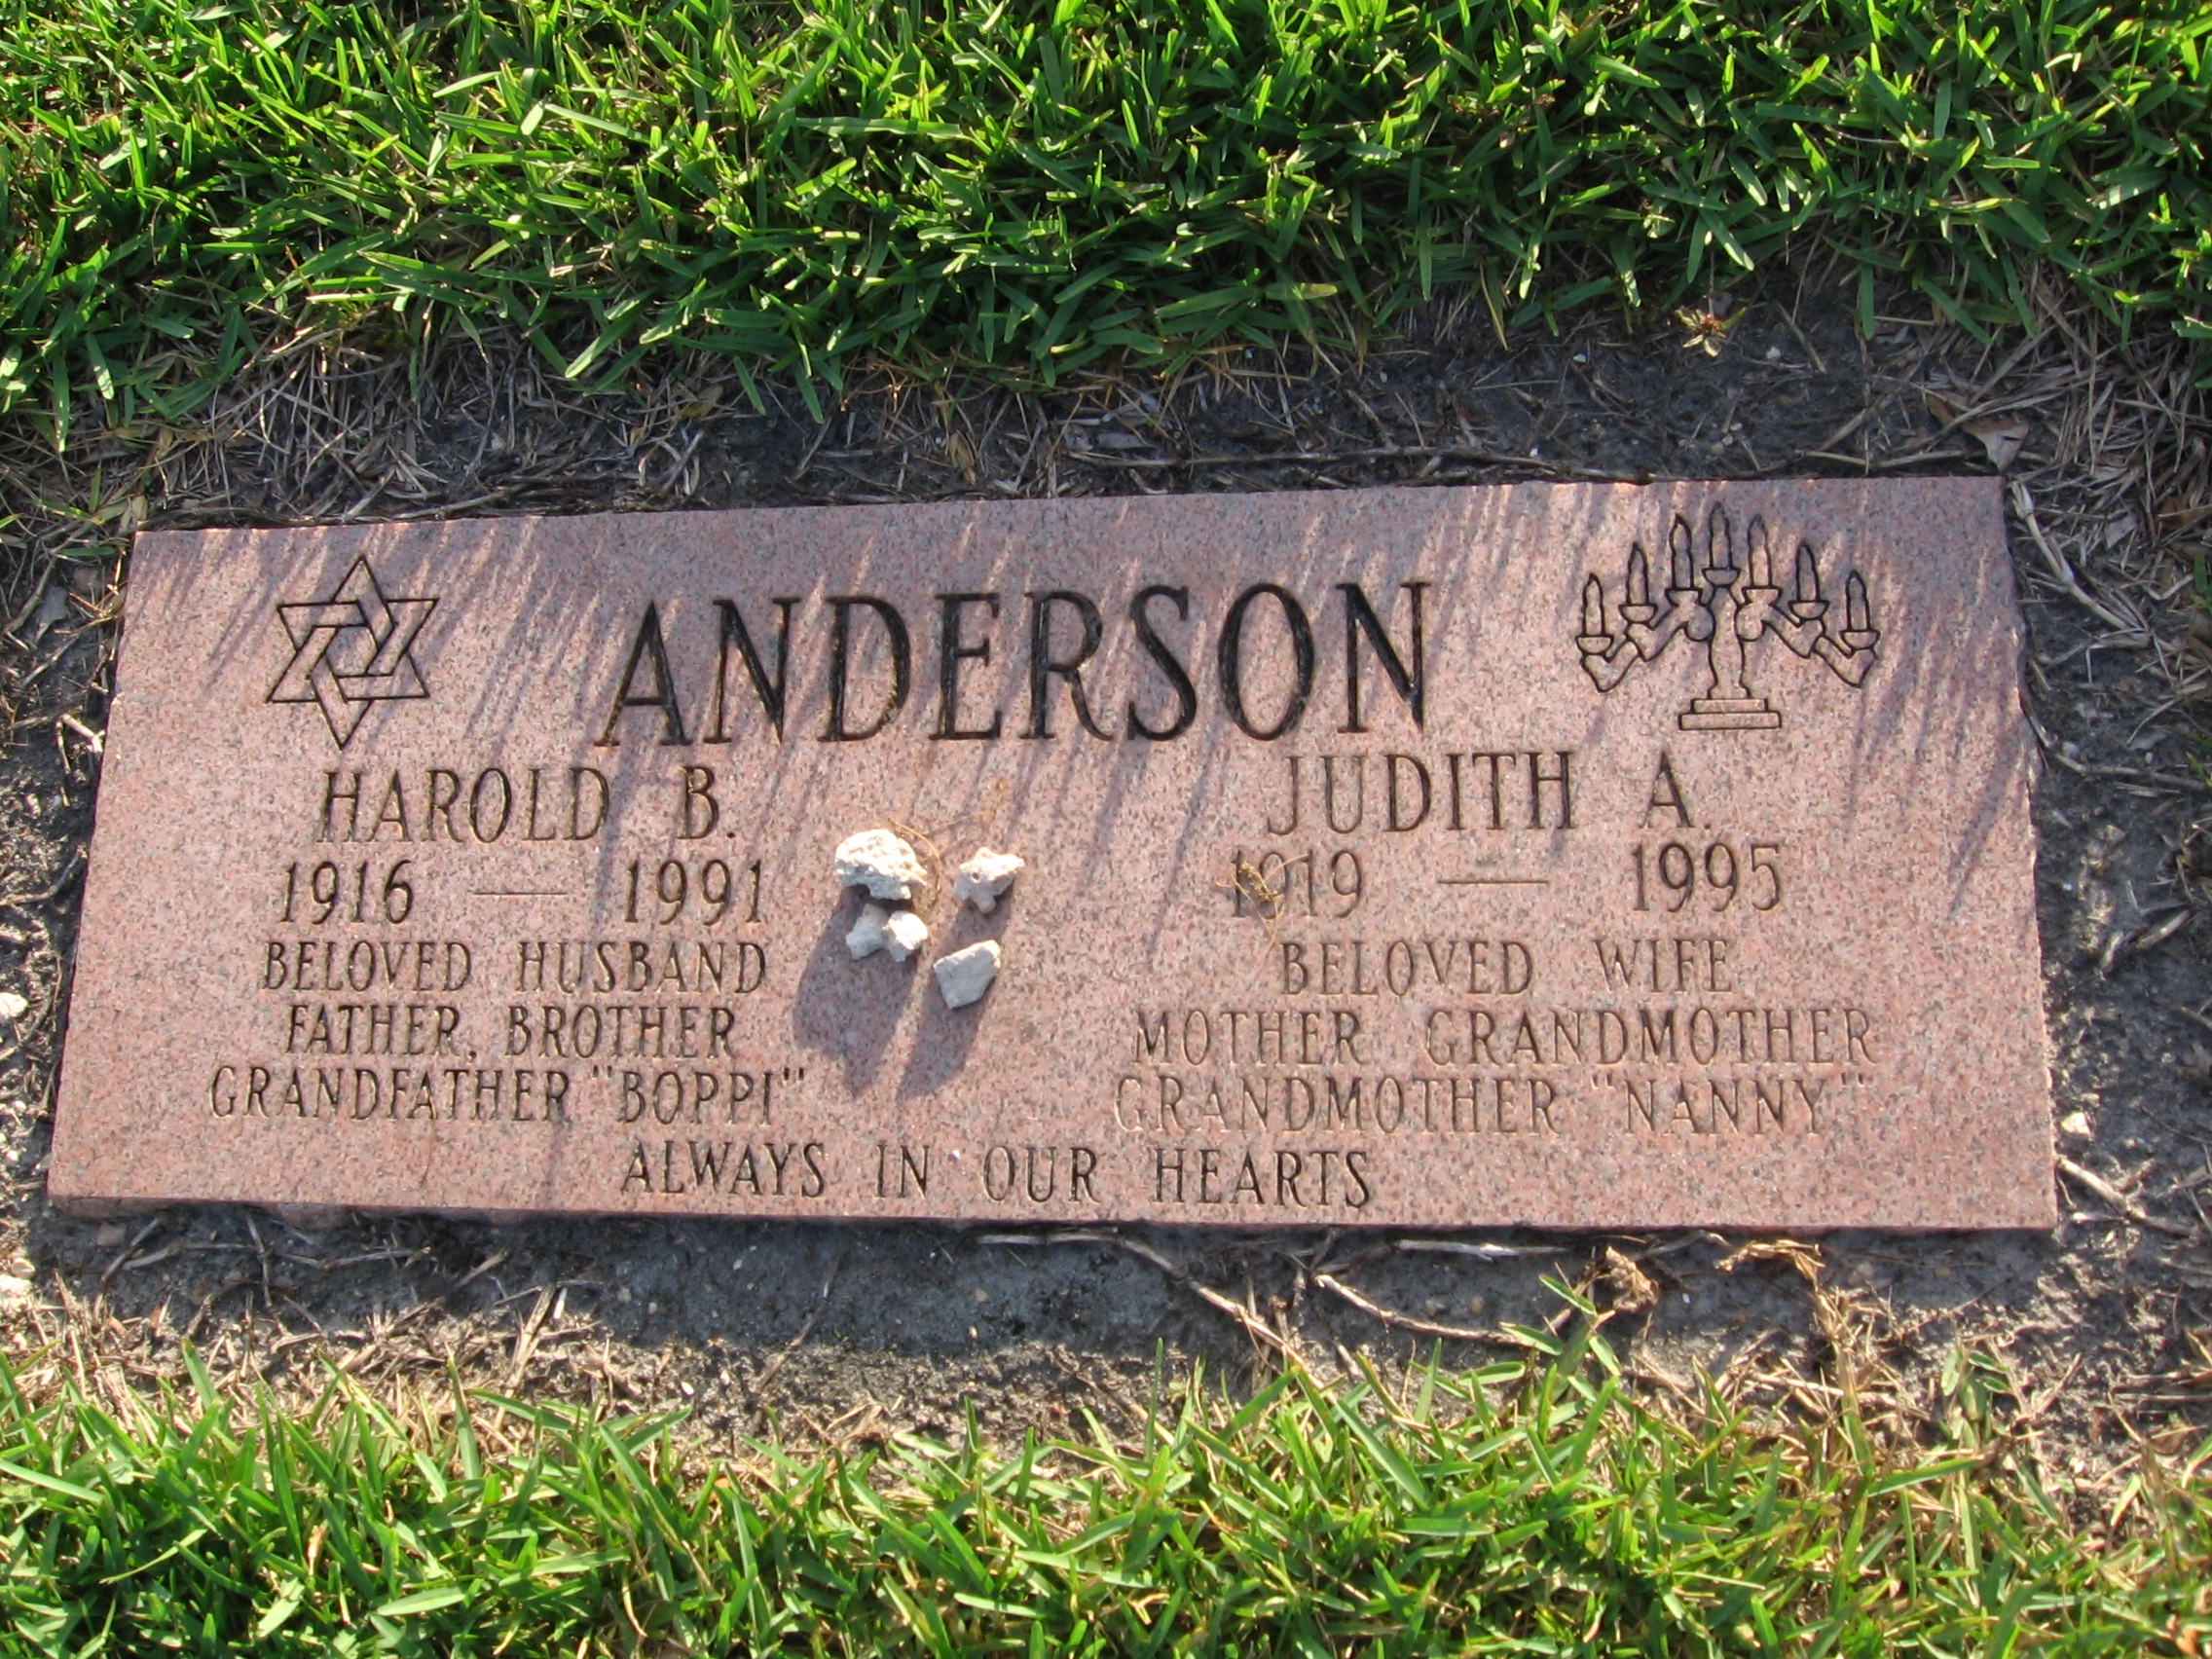 Harold B Anderson